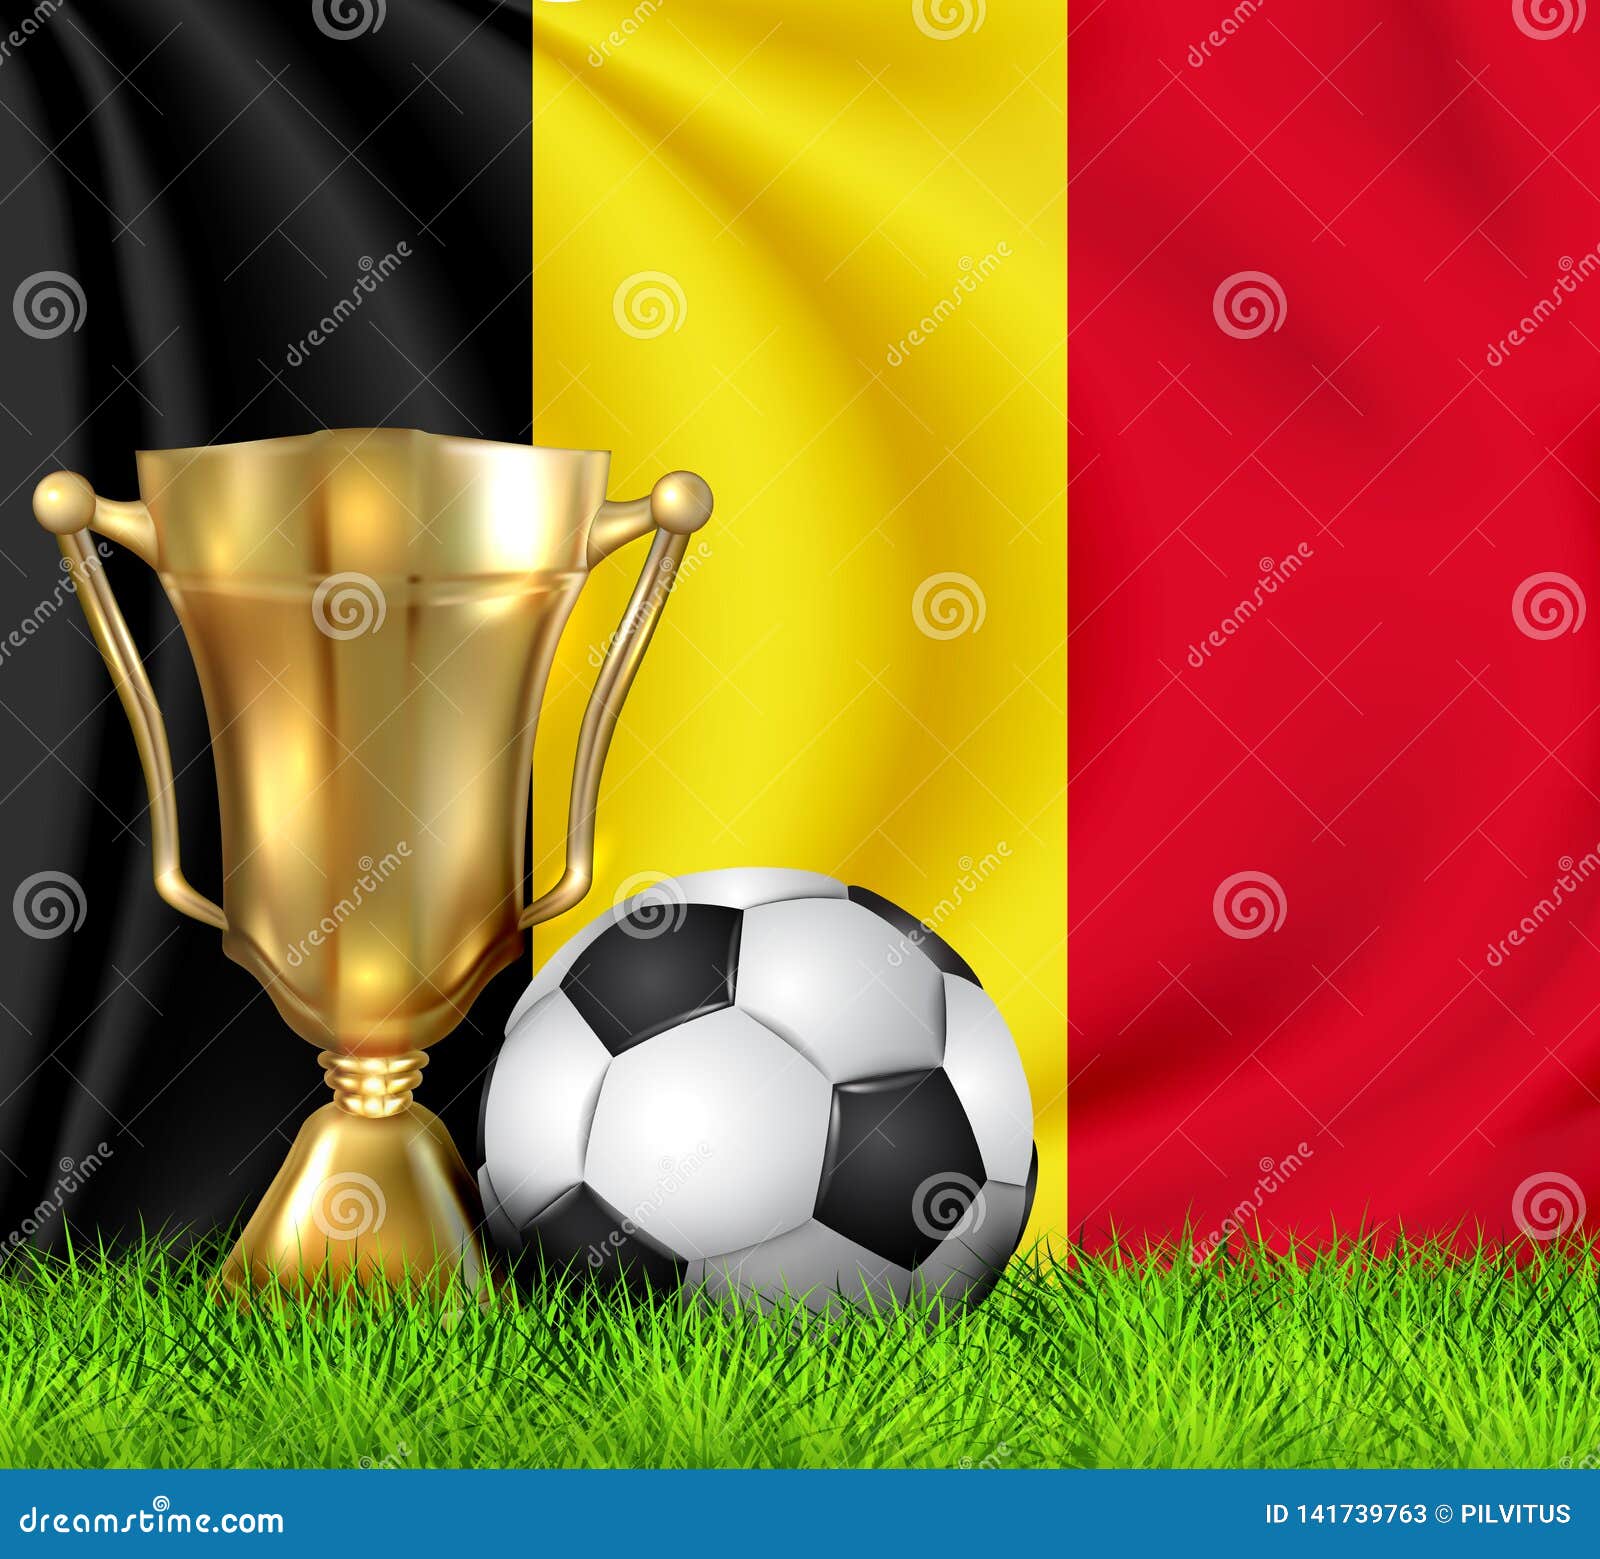 https://thumbs.dreamstime.com/z/tasse-d-et-ballon-de-football-r%C3%A9alistes-troph%C3%A9e-gagnant-isolement-sur-le-drapeau-national-la-belgique-l-%C3%A9quipe-nationale-est-141739763.jpg